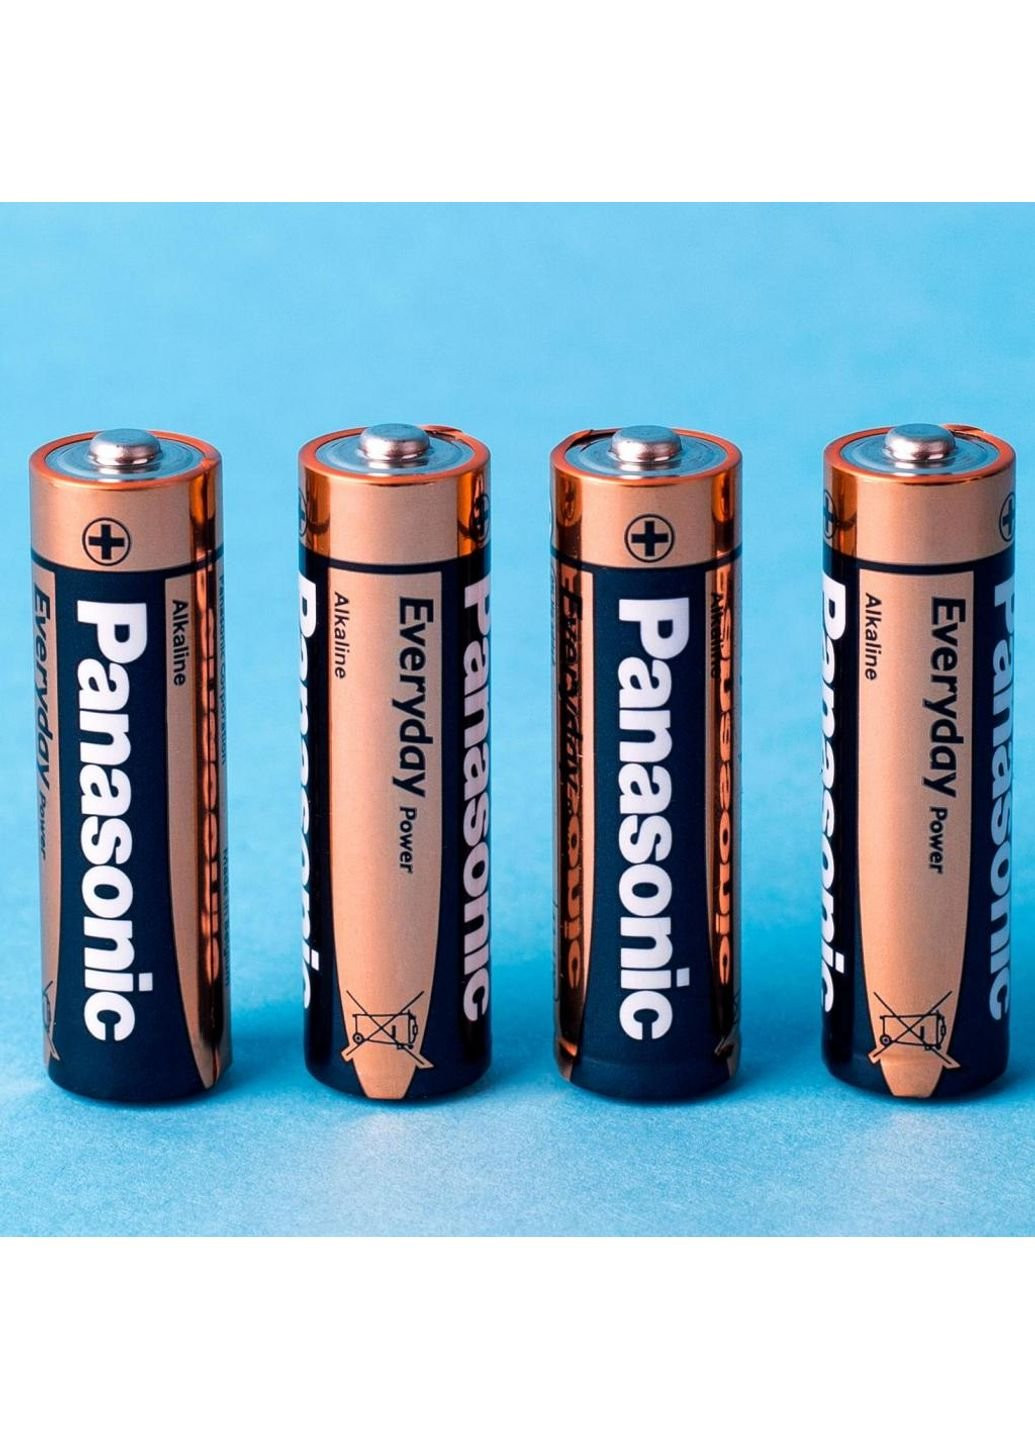 AA повсякденна потужність * 4 батарея (LR6REE / 4BR) Panasonic (251412250)